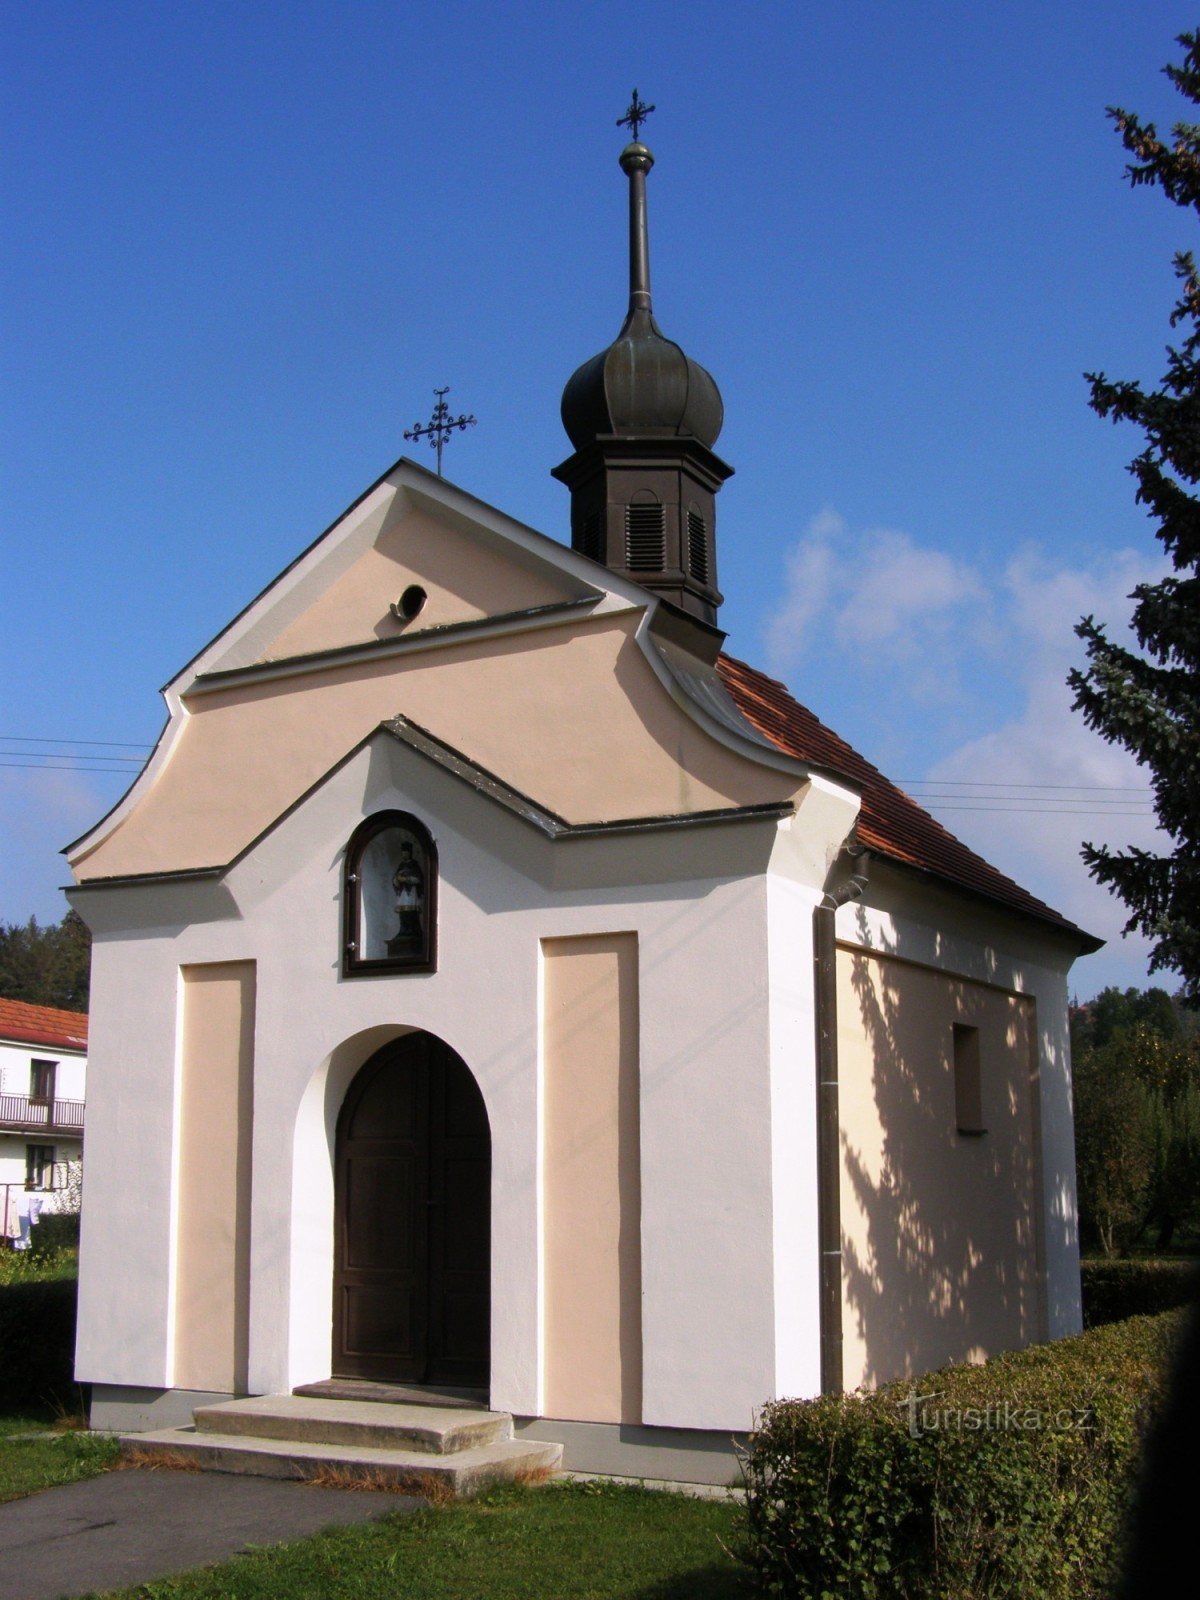 Poříčí a Litomyšle közelében - Szent Kápolna. Jan Nepomucký